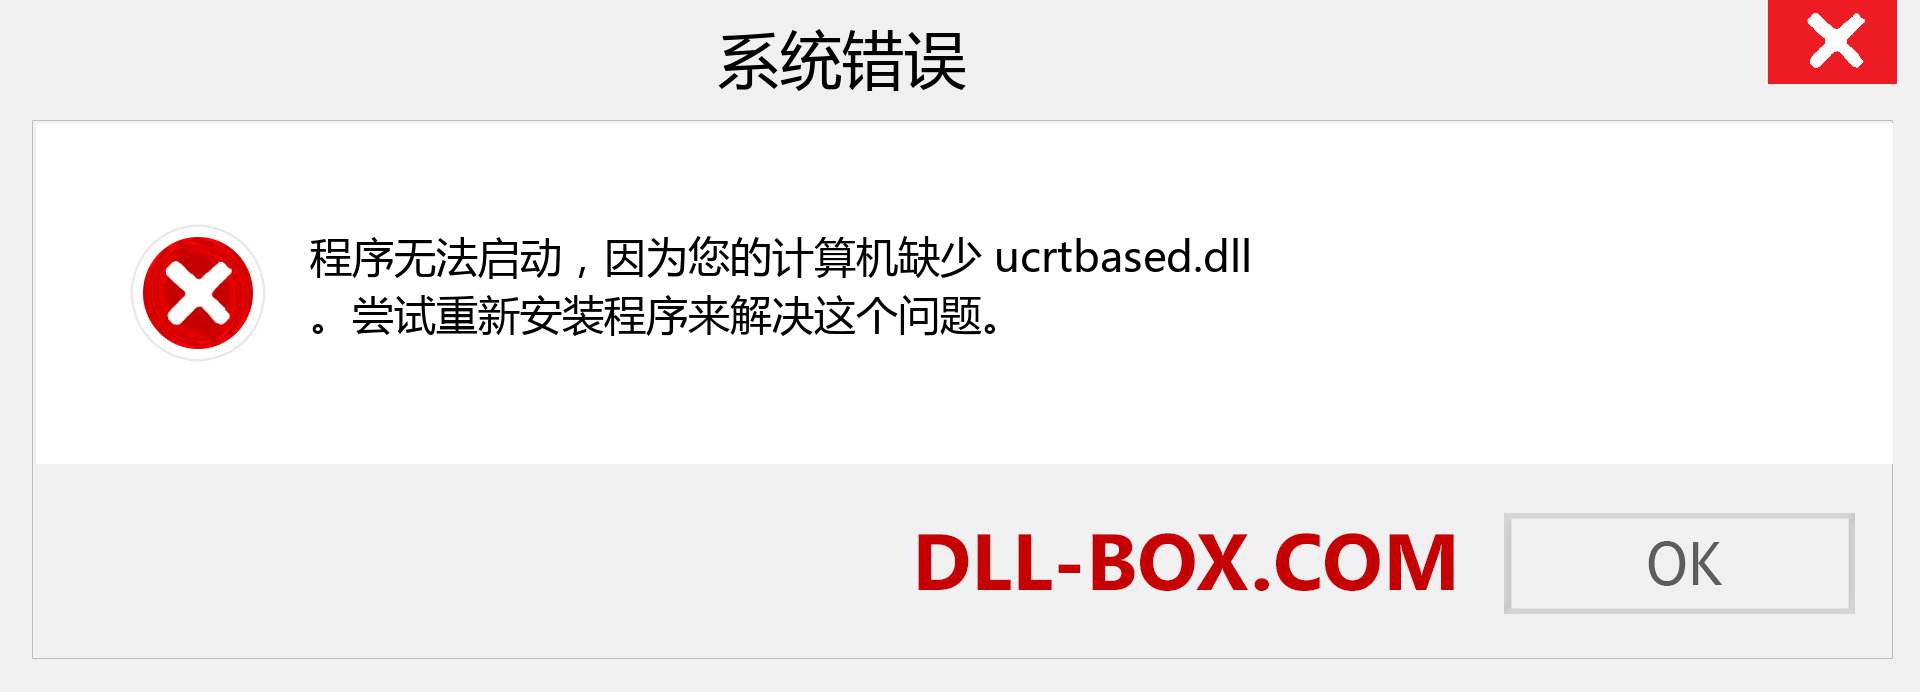 ucrtbased.dll 文件丢失？。 适用于 Windows 7、8、10 的下载 - 修复 Windows、照片、图像上的 ucrtbased dll 丢失错误